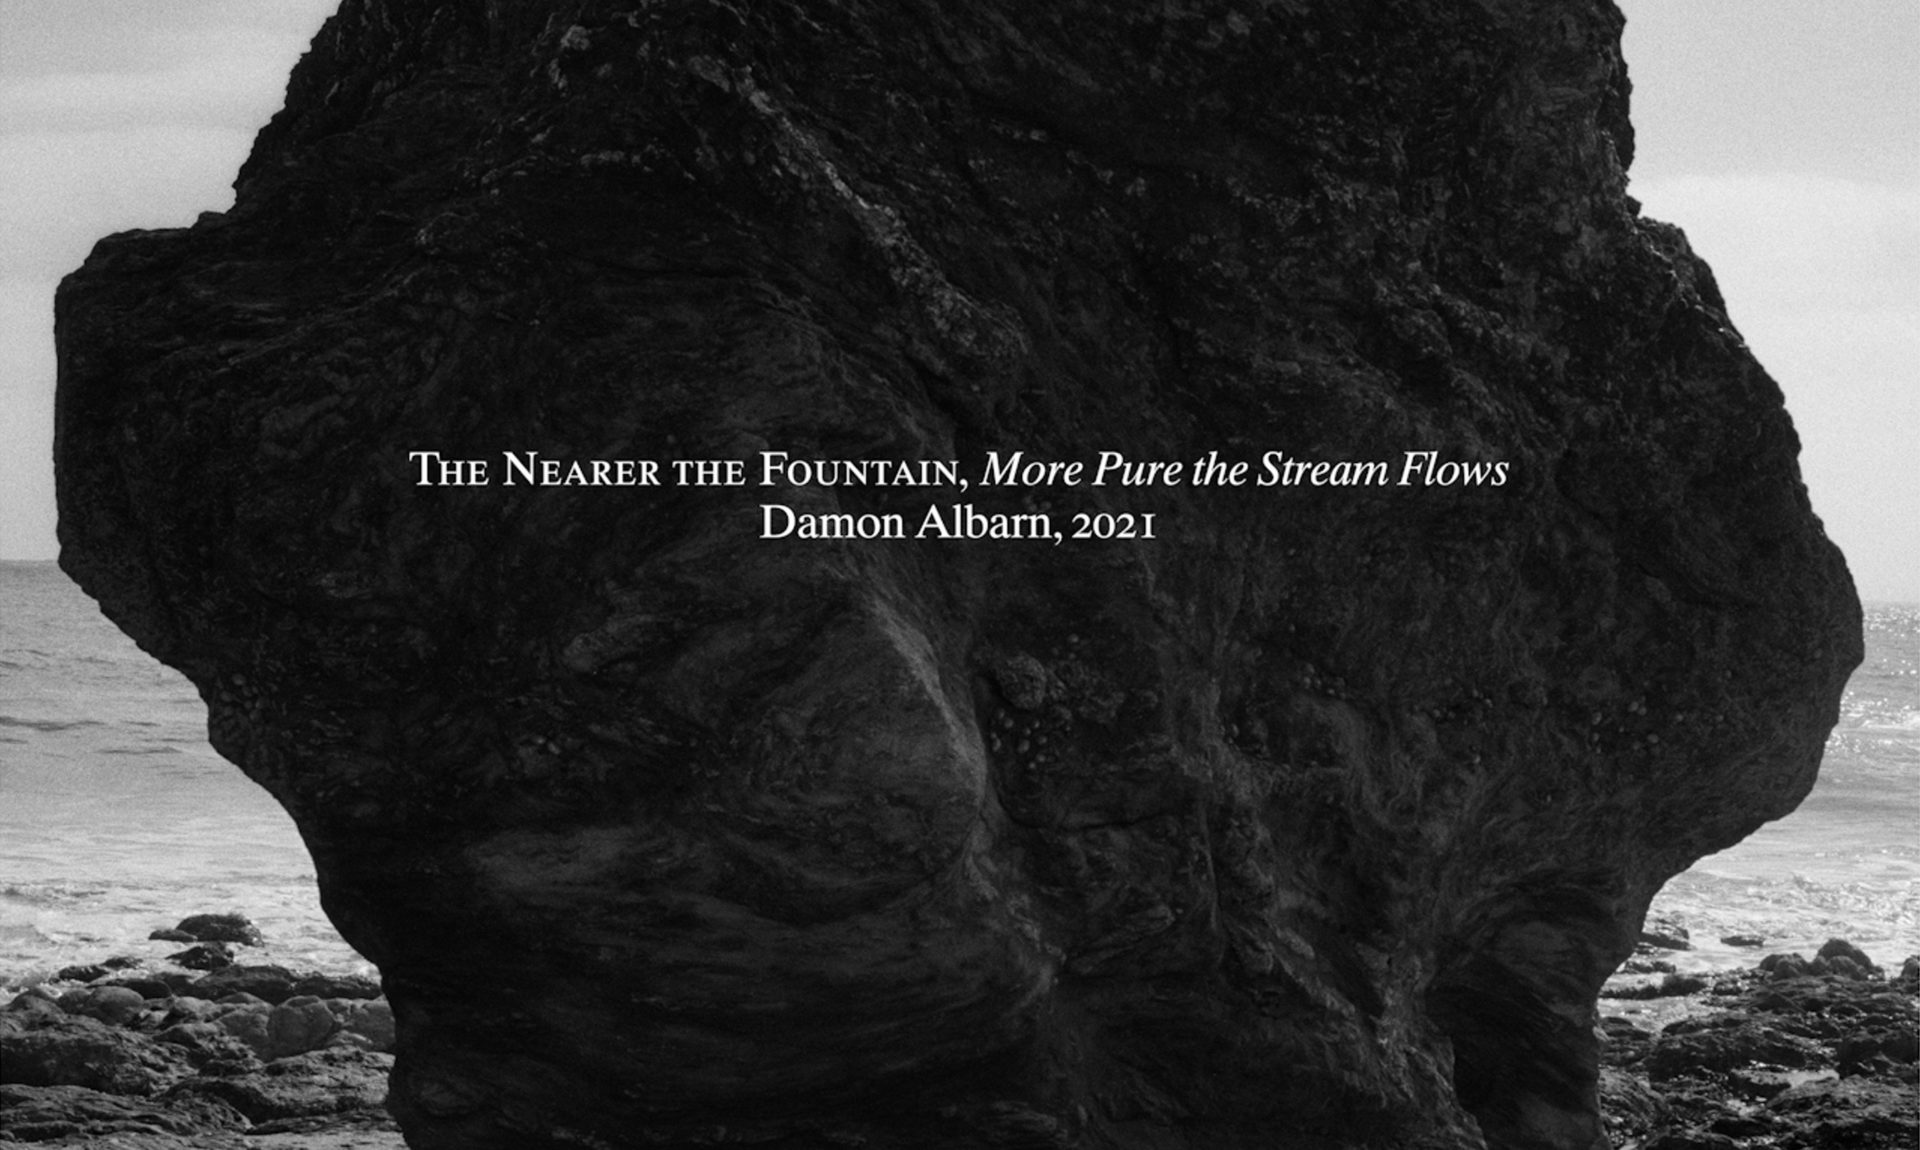 Damon Albarn เปิดตัวอัลบั้มเดี่ยวชุดใหม่ ถ่ายทอดอารมณ์และความเยือกเย็นผ่านบทเพลง